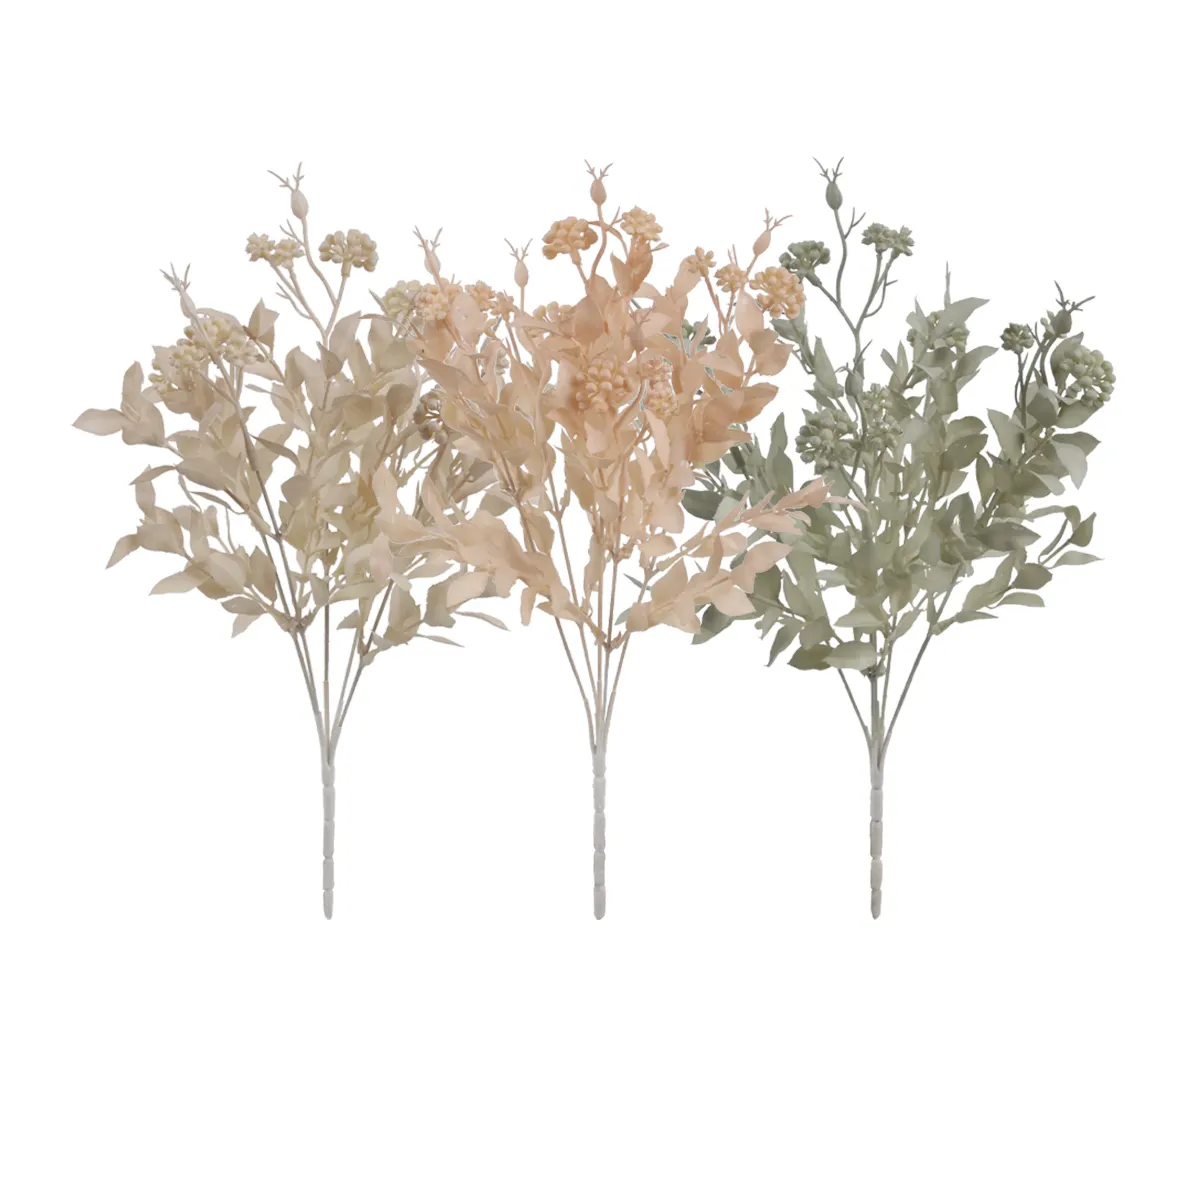 JS0729-88 de eucalipto Artificial para decoración de boda, ramo de hojas, plantas